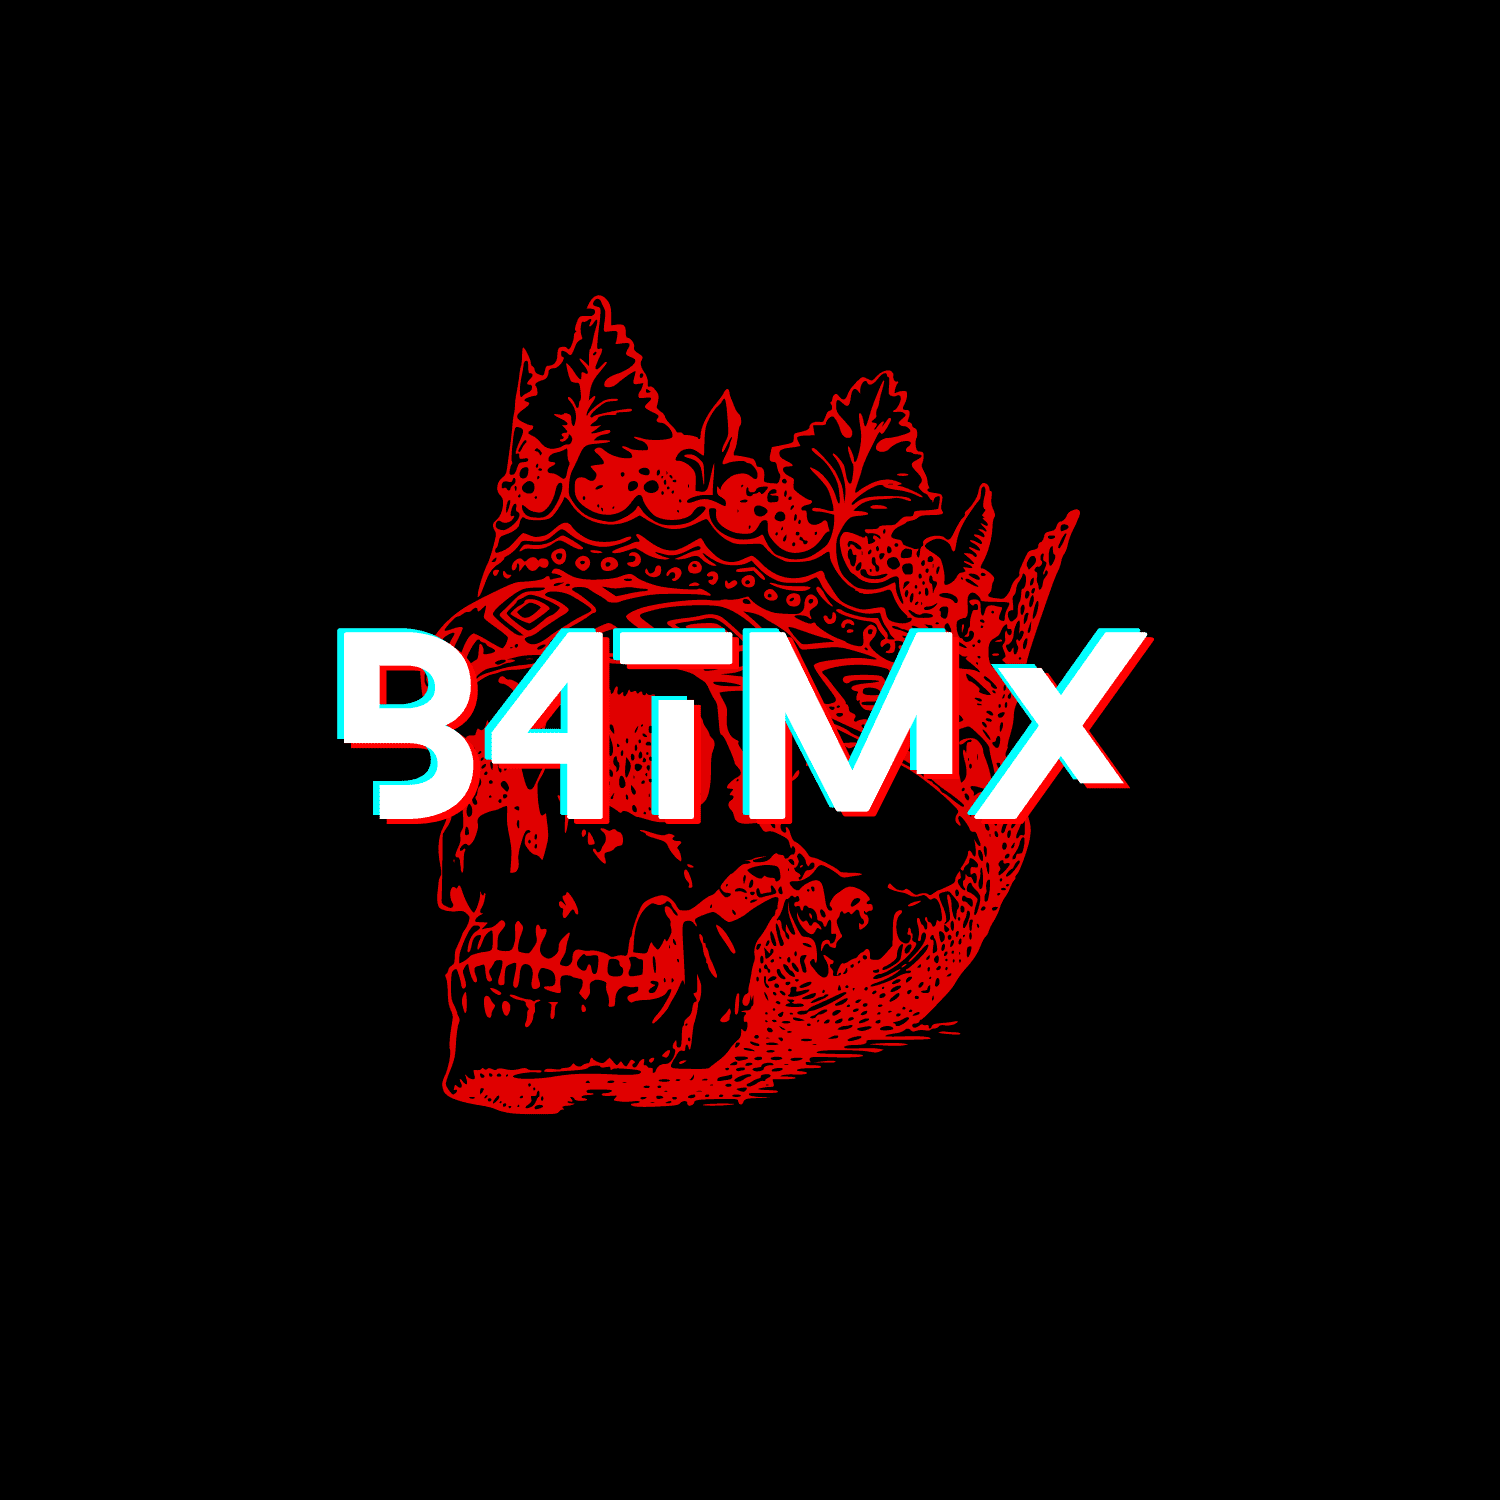 B4TMX